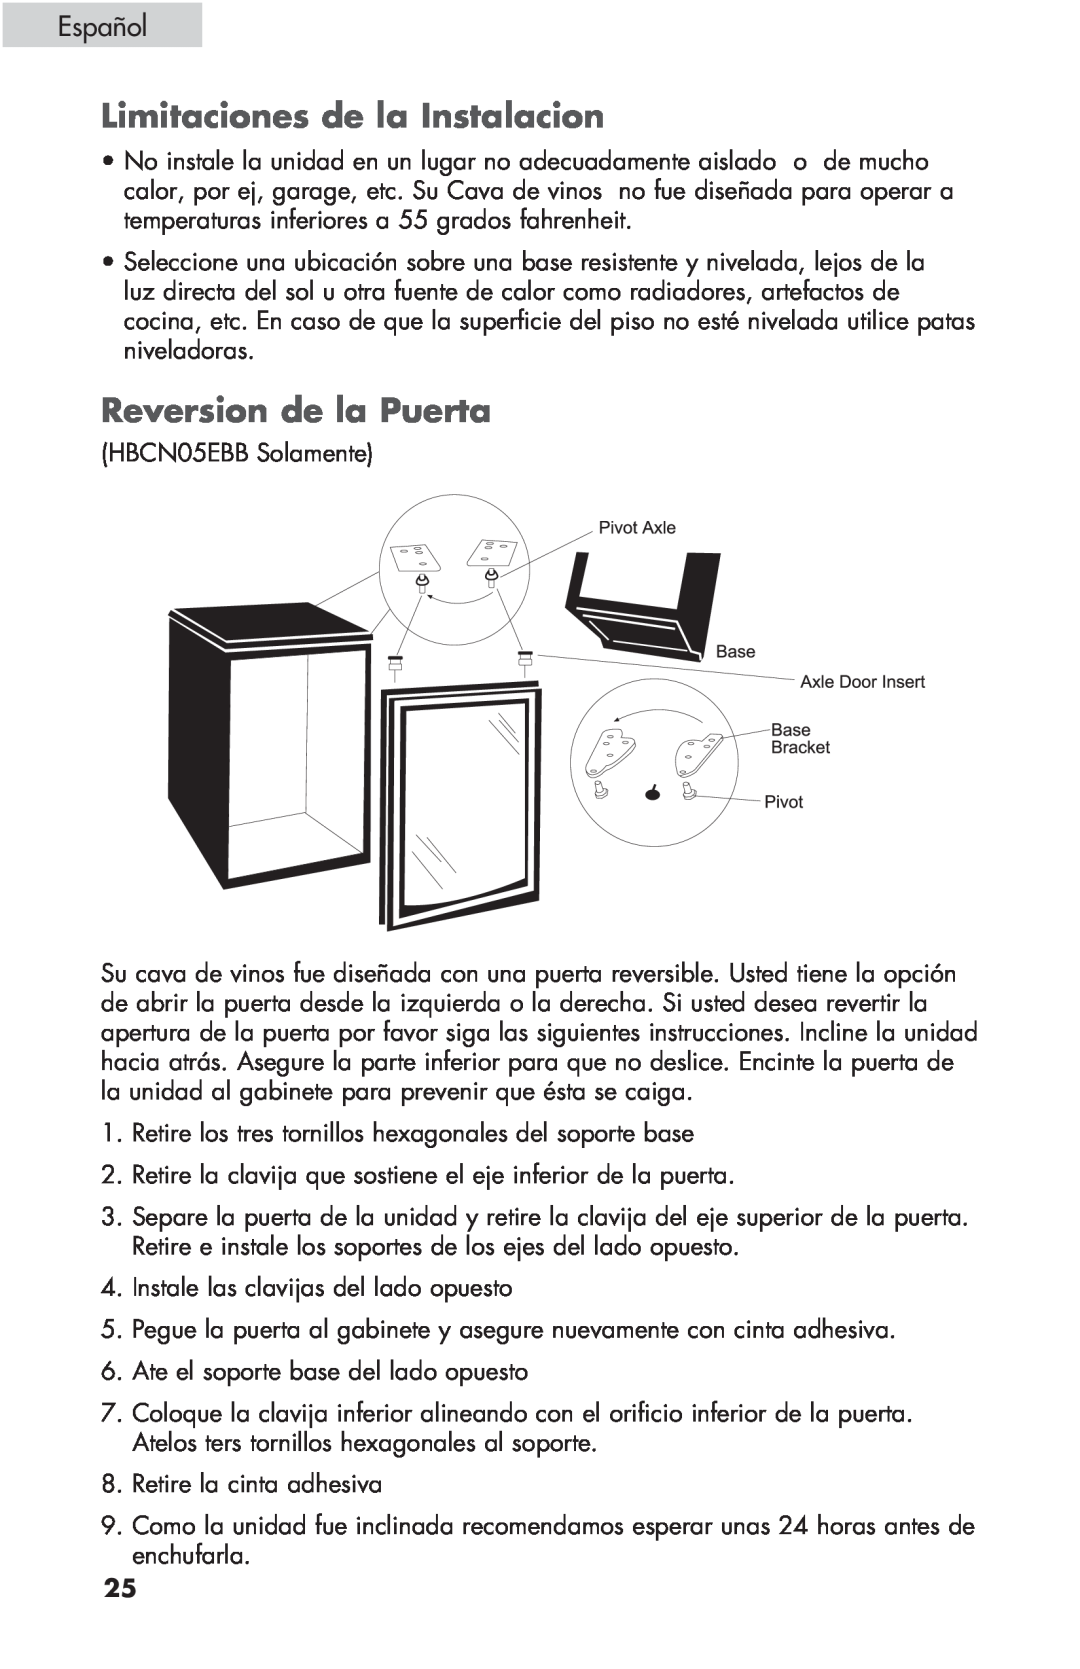 Haier HBCN05FVS user manual Limitaciones de la Instalacion, Reversion de la Puerta, Español 